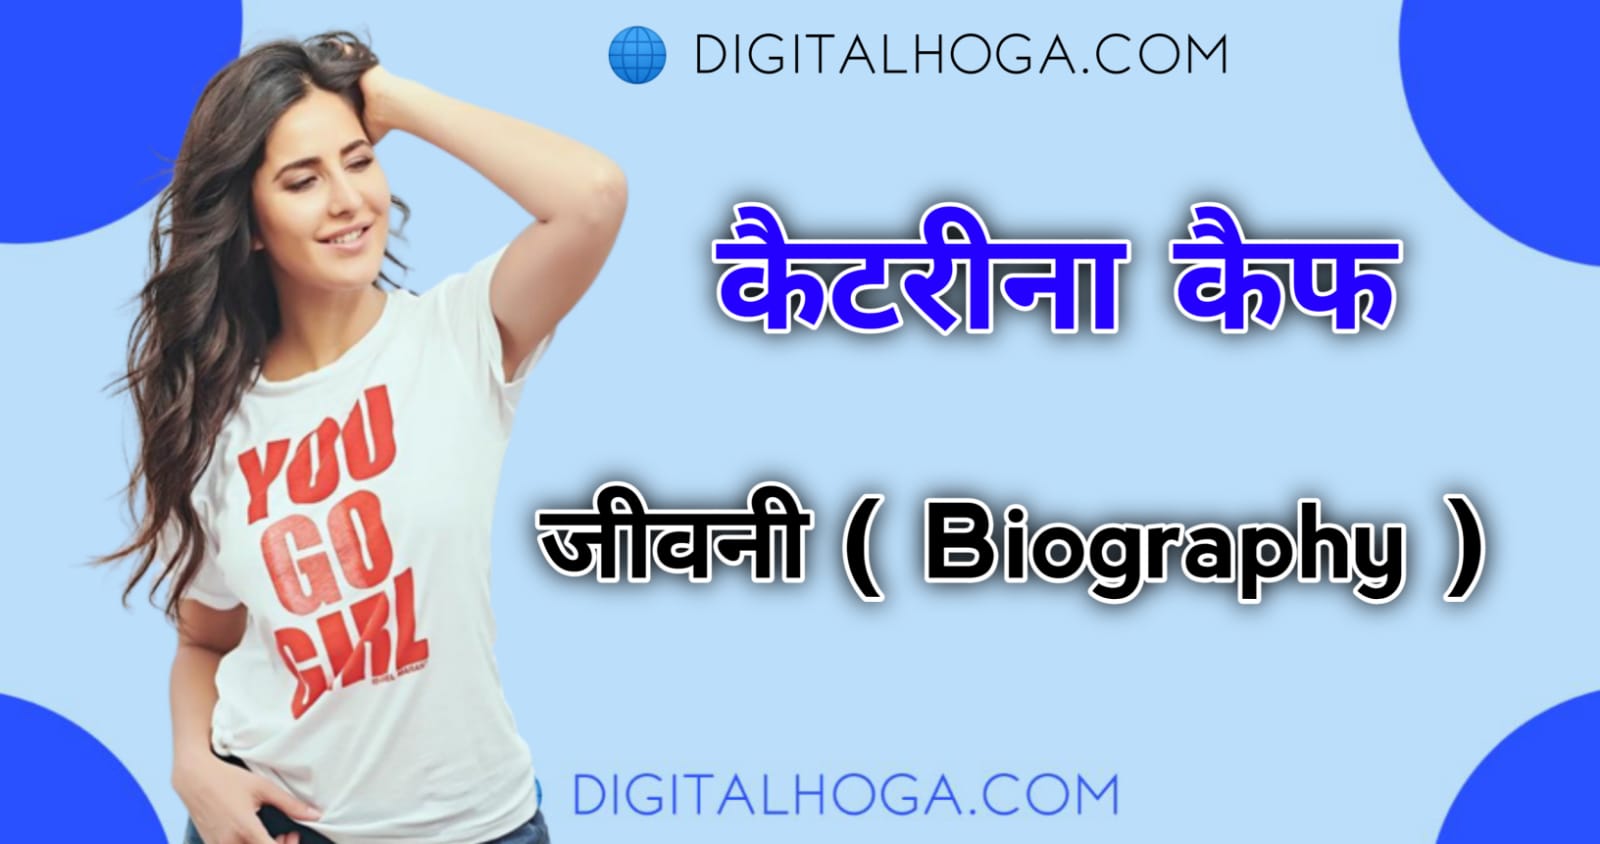 Katrina kaif Biography in hindi